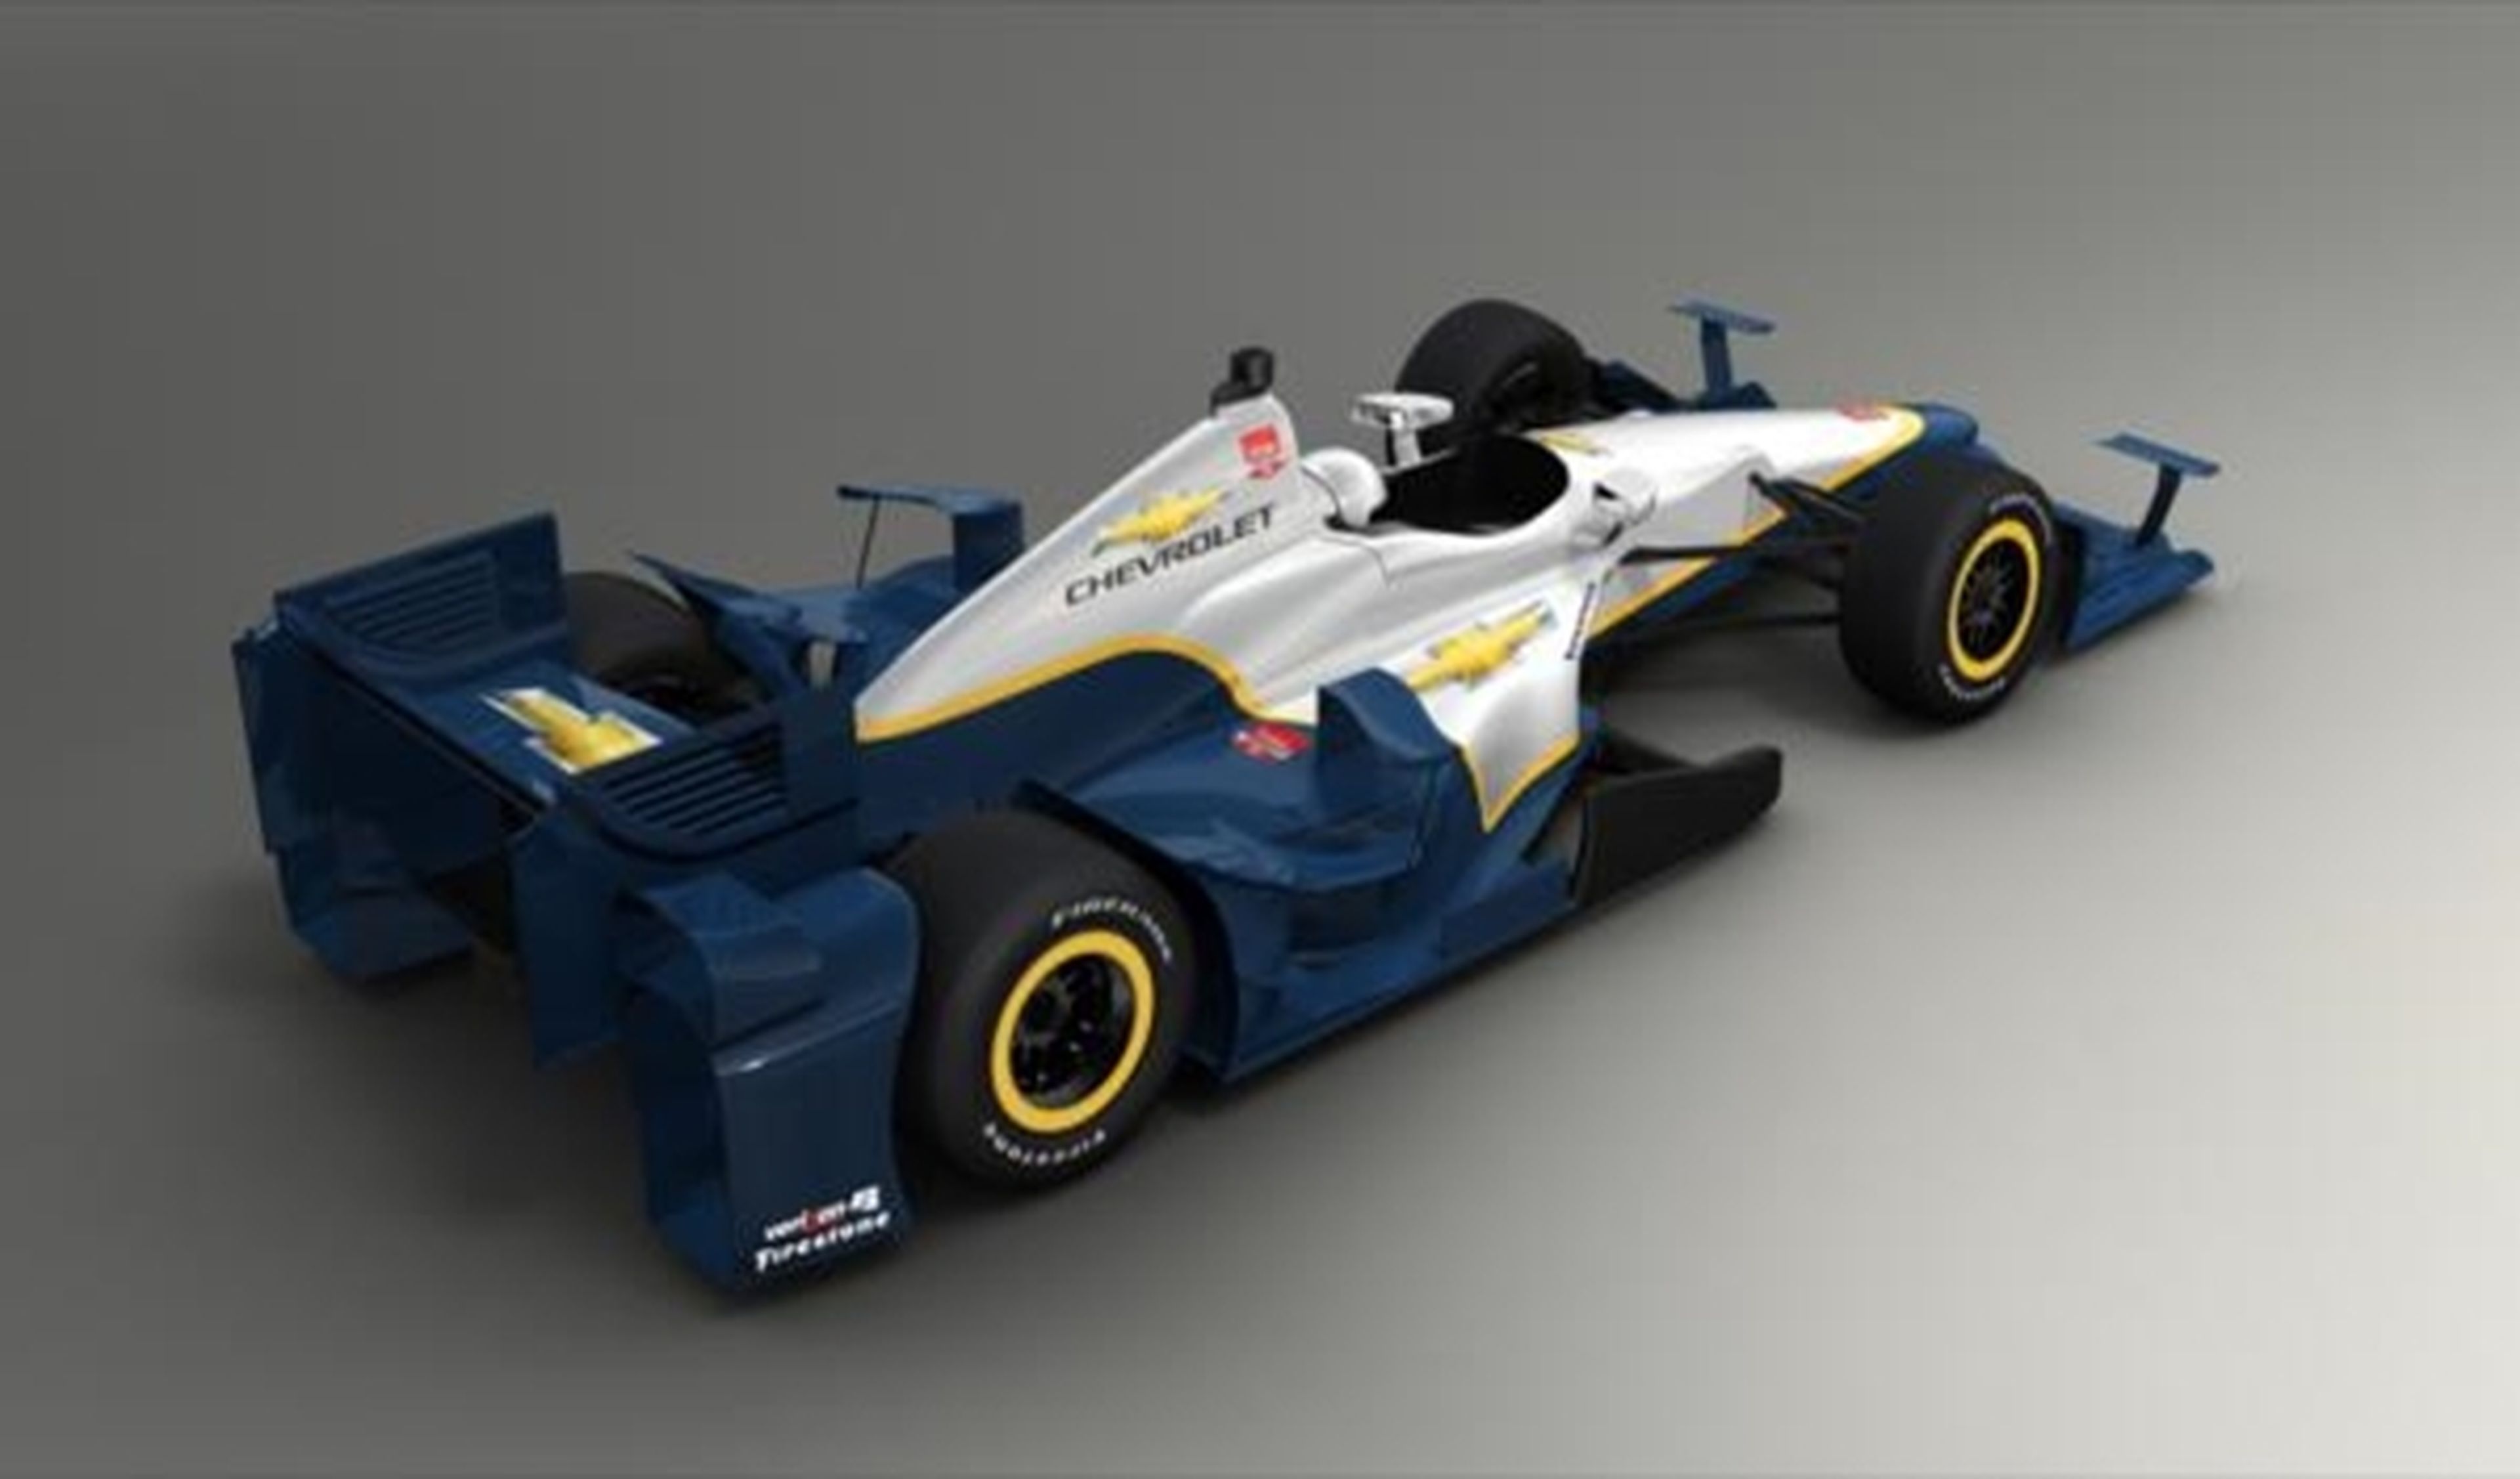 Chevrolet desvela el nuevo kit aerodinámico para la Indycar